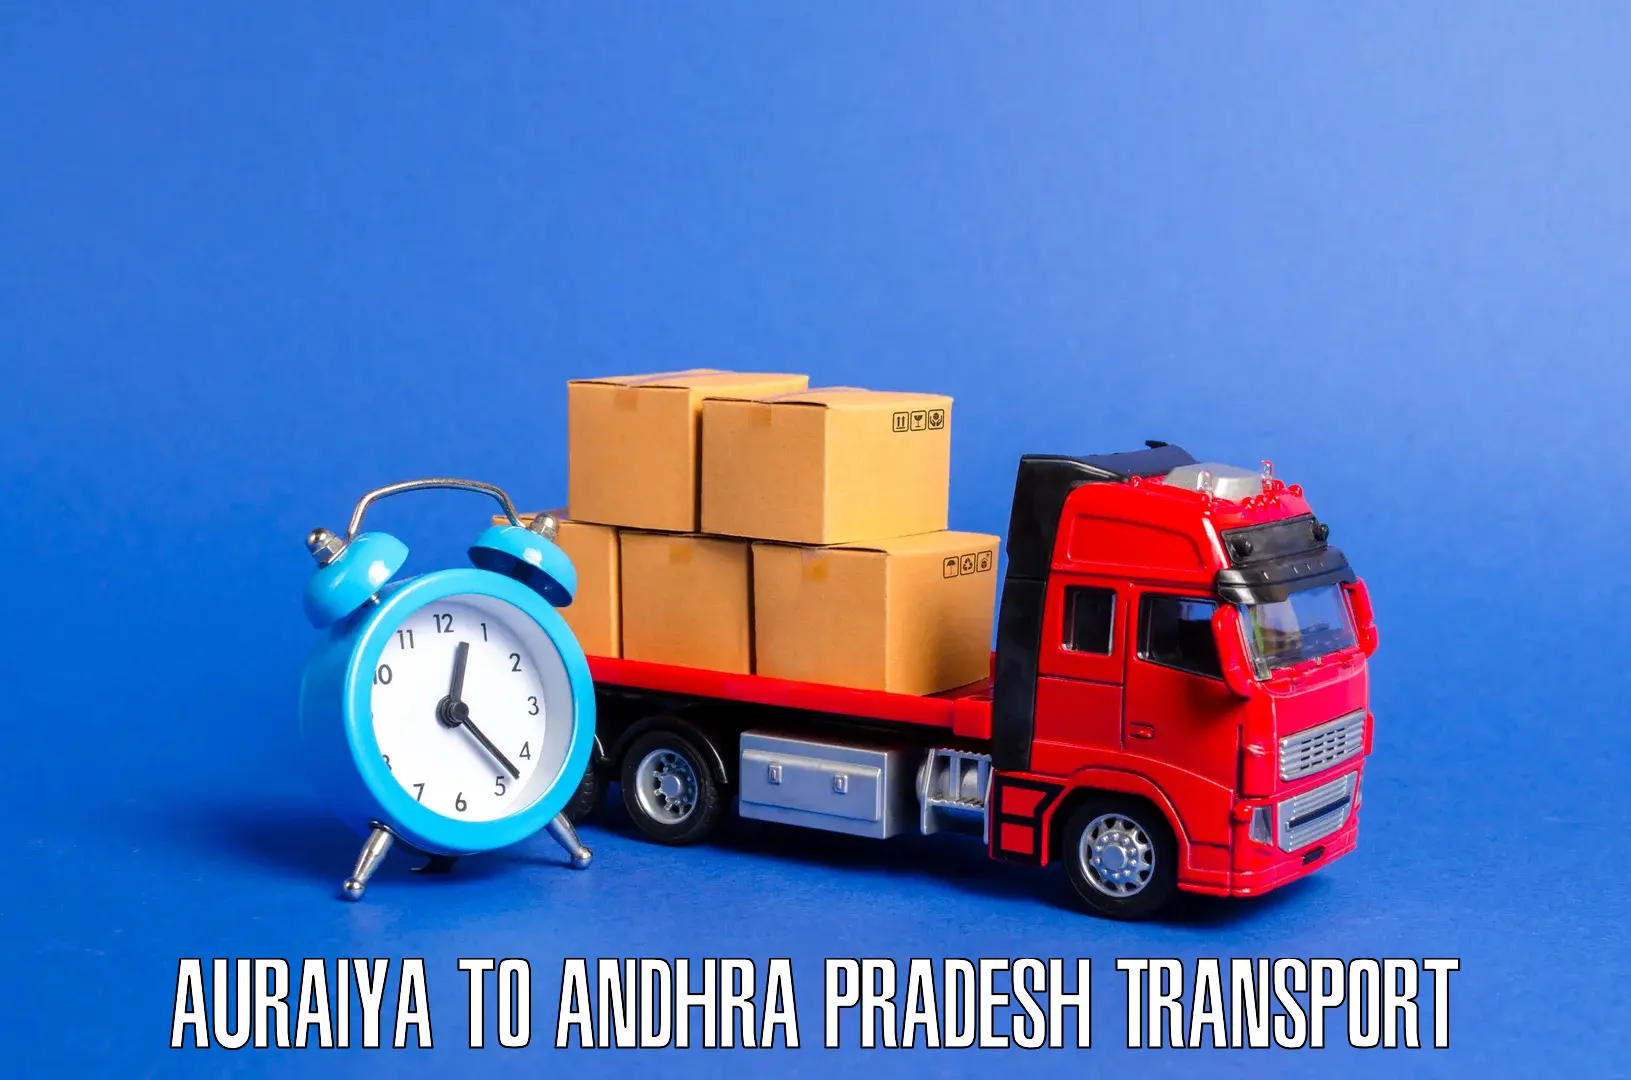 Daily transport service Auraiya to IIIT Chittoor